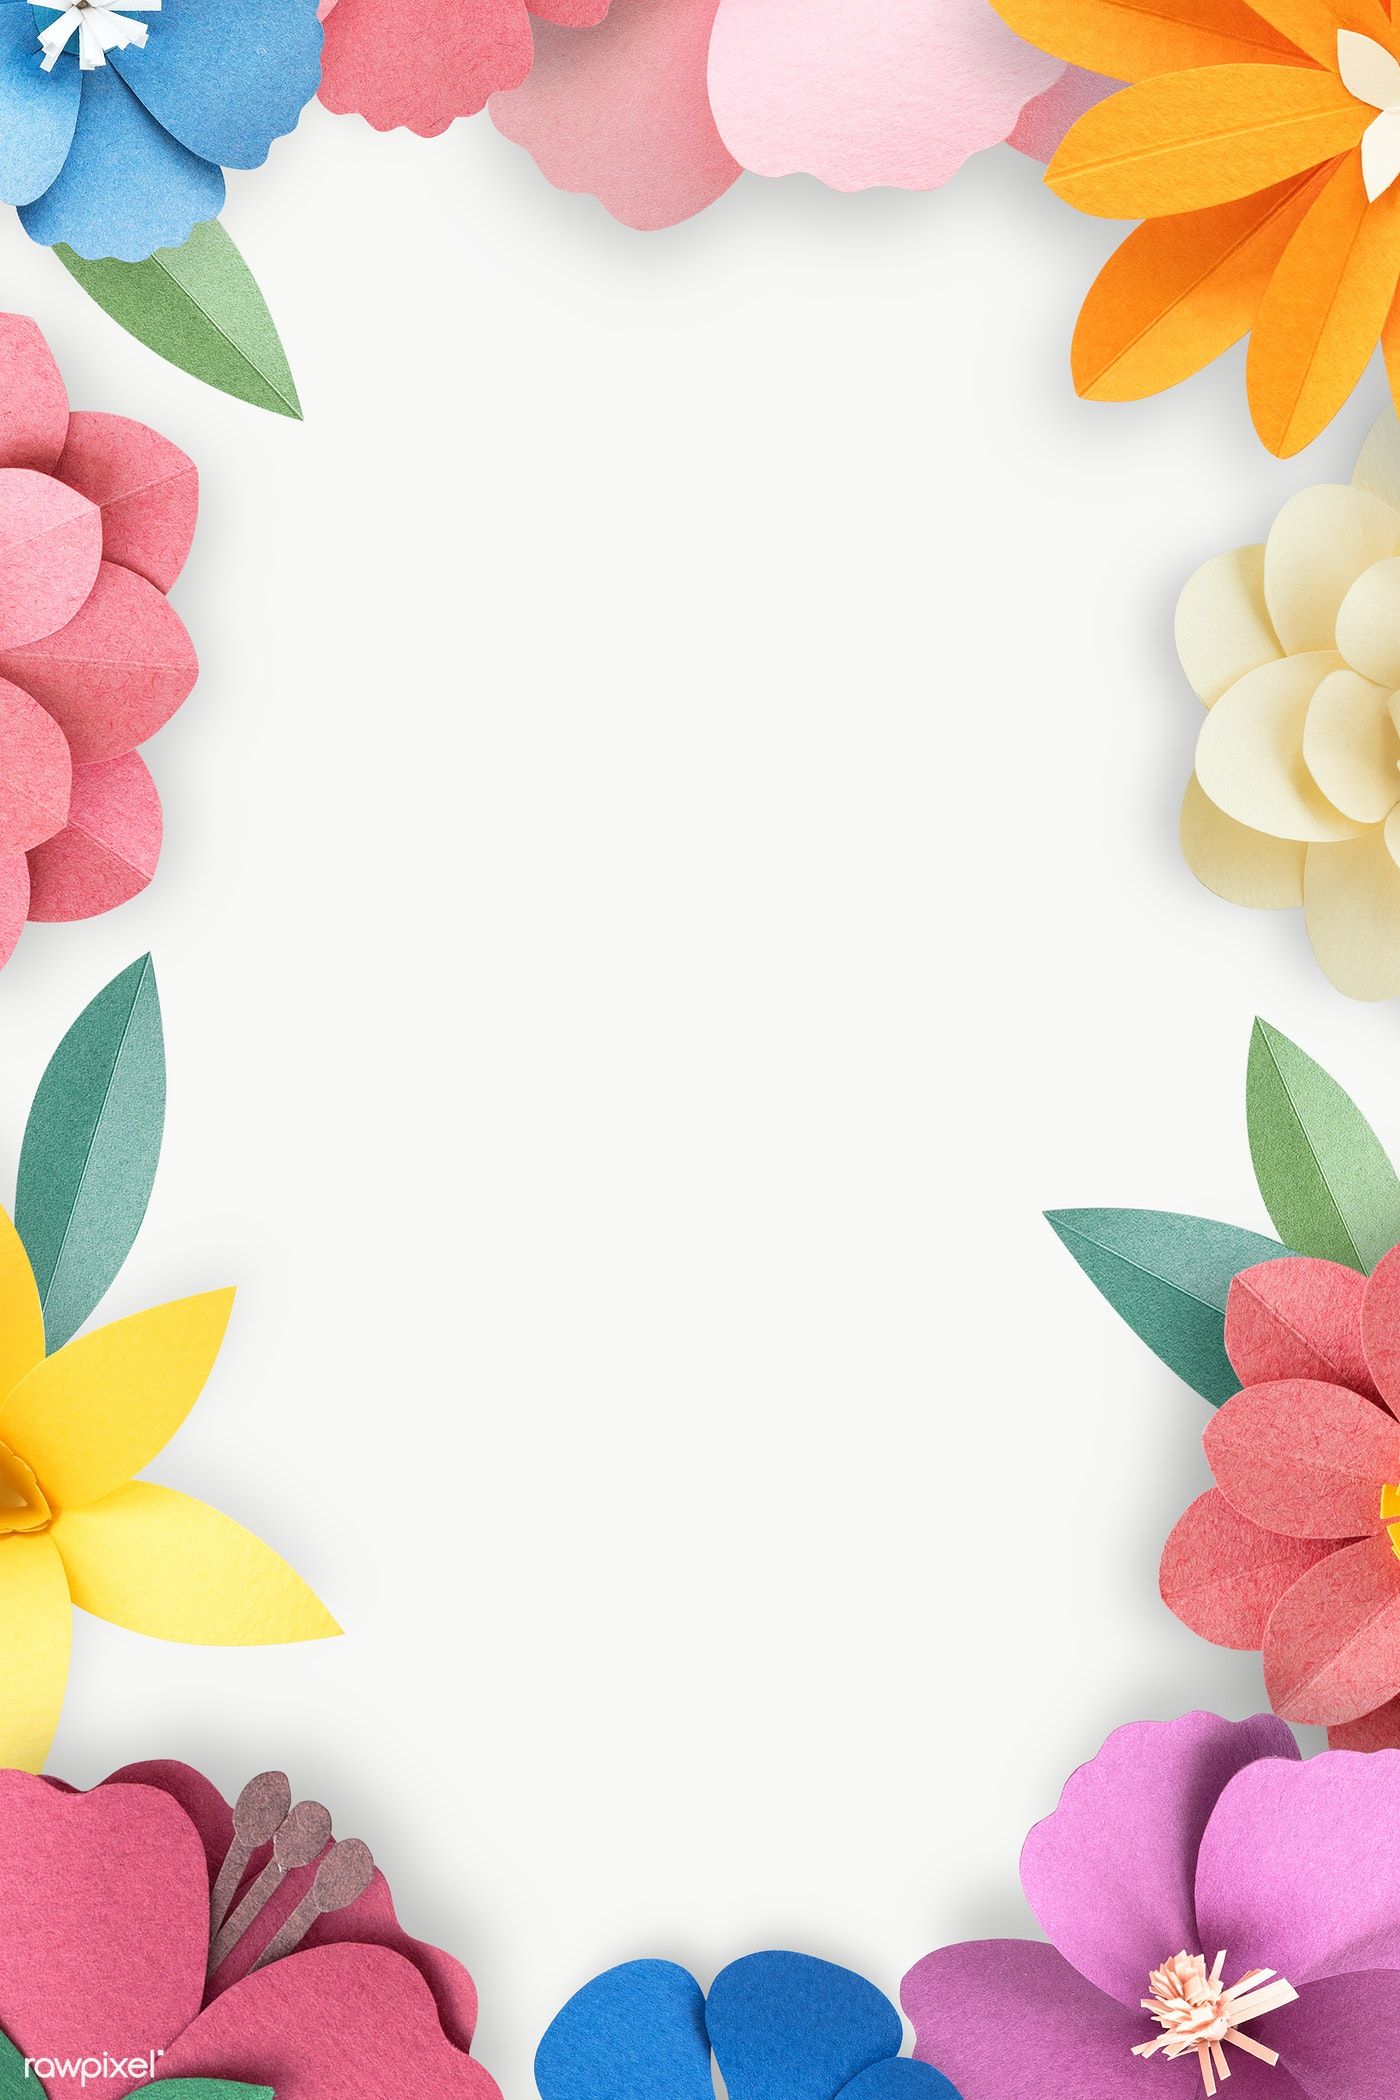 Colorful and tropical floral frame transparet png / nunny. Floral border design, Flower frame png, Flower frame